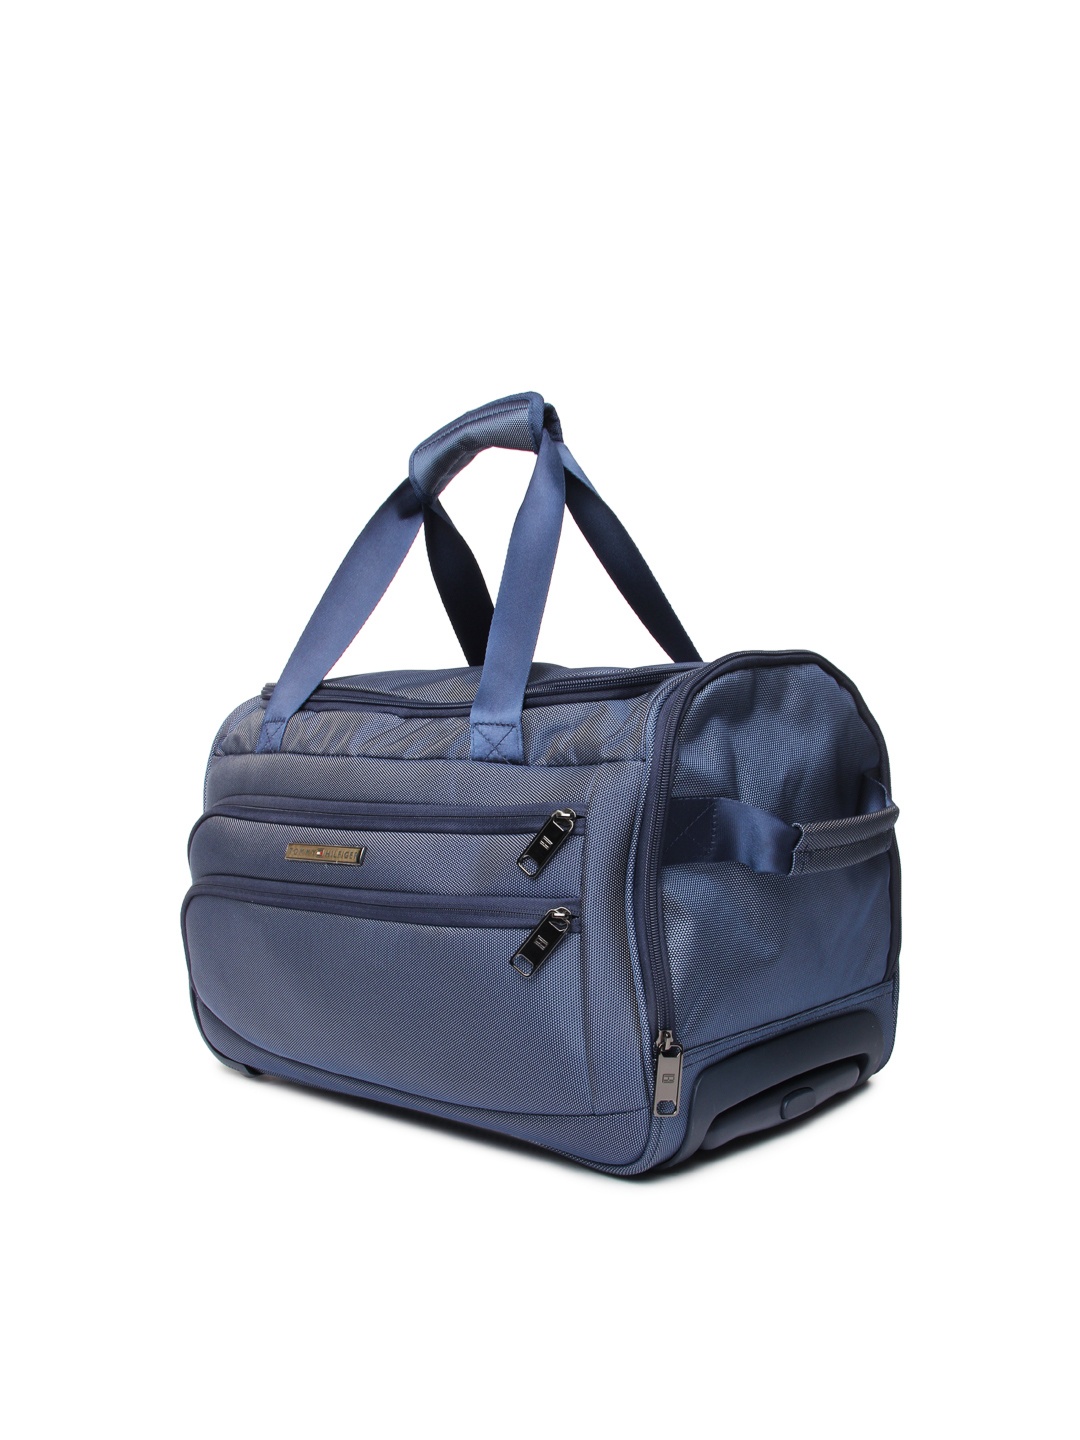 Myntra Tommy Hilfiger Unisex Blue Trolley Duffle Bag 601844 | Buy ...